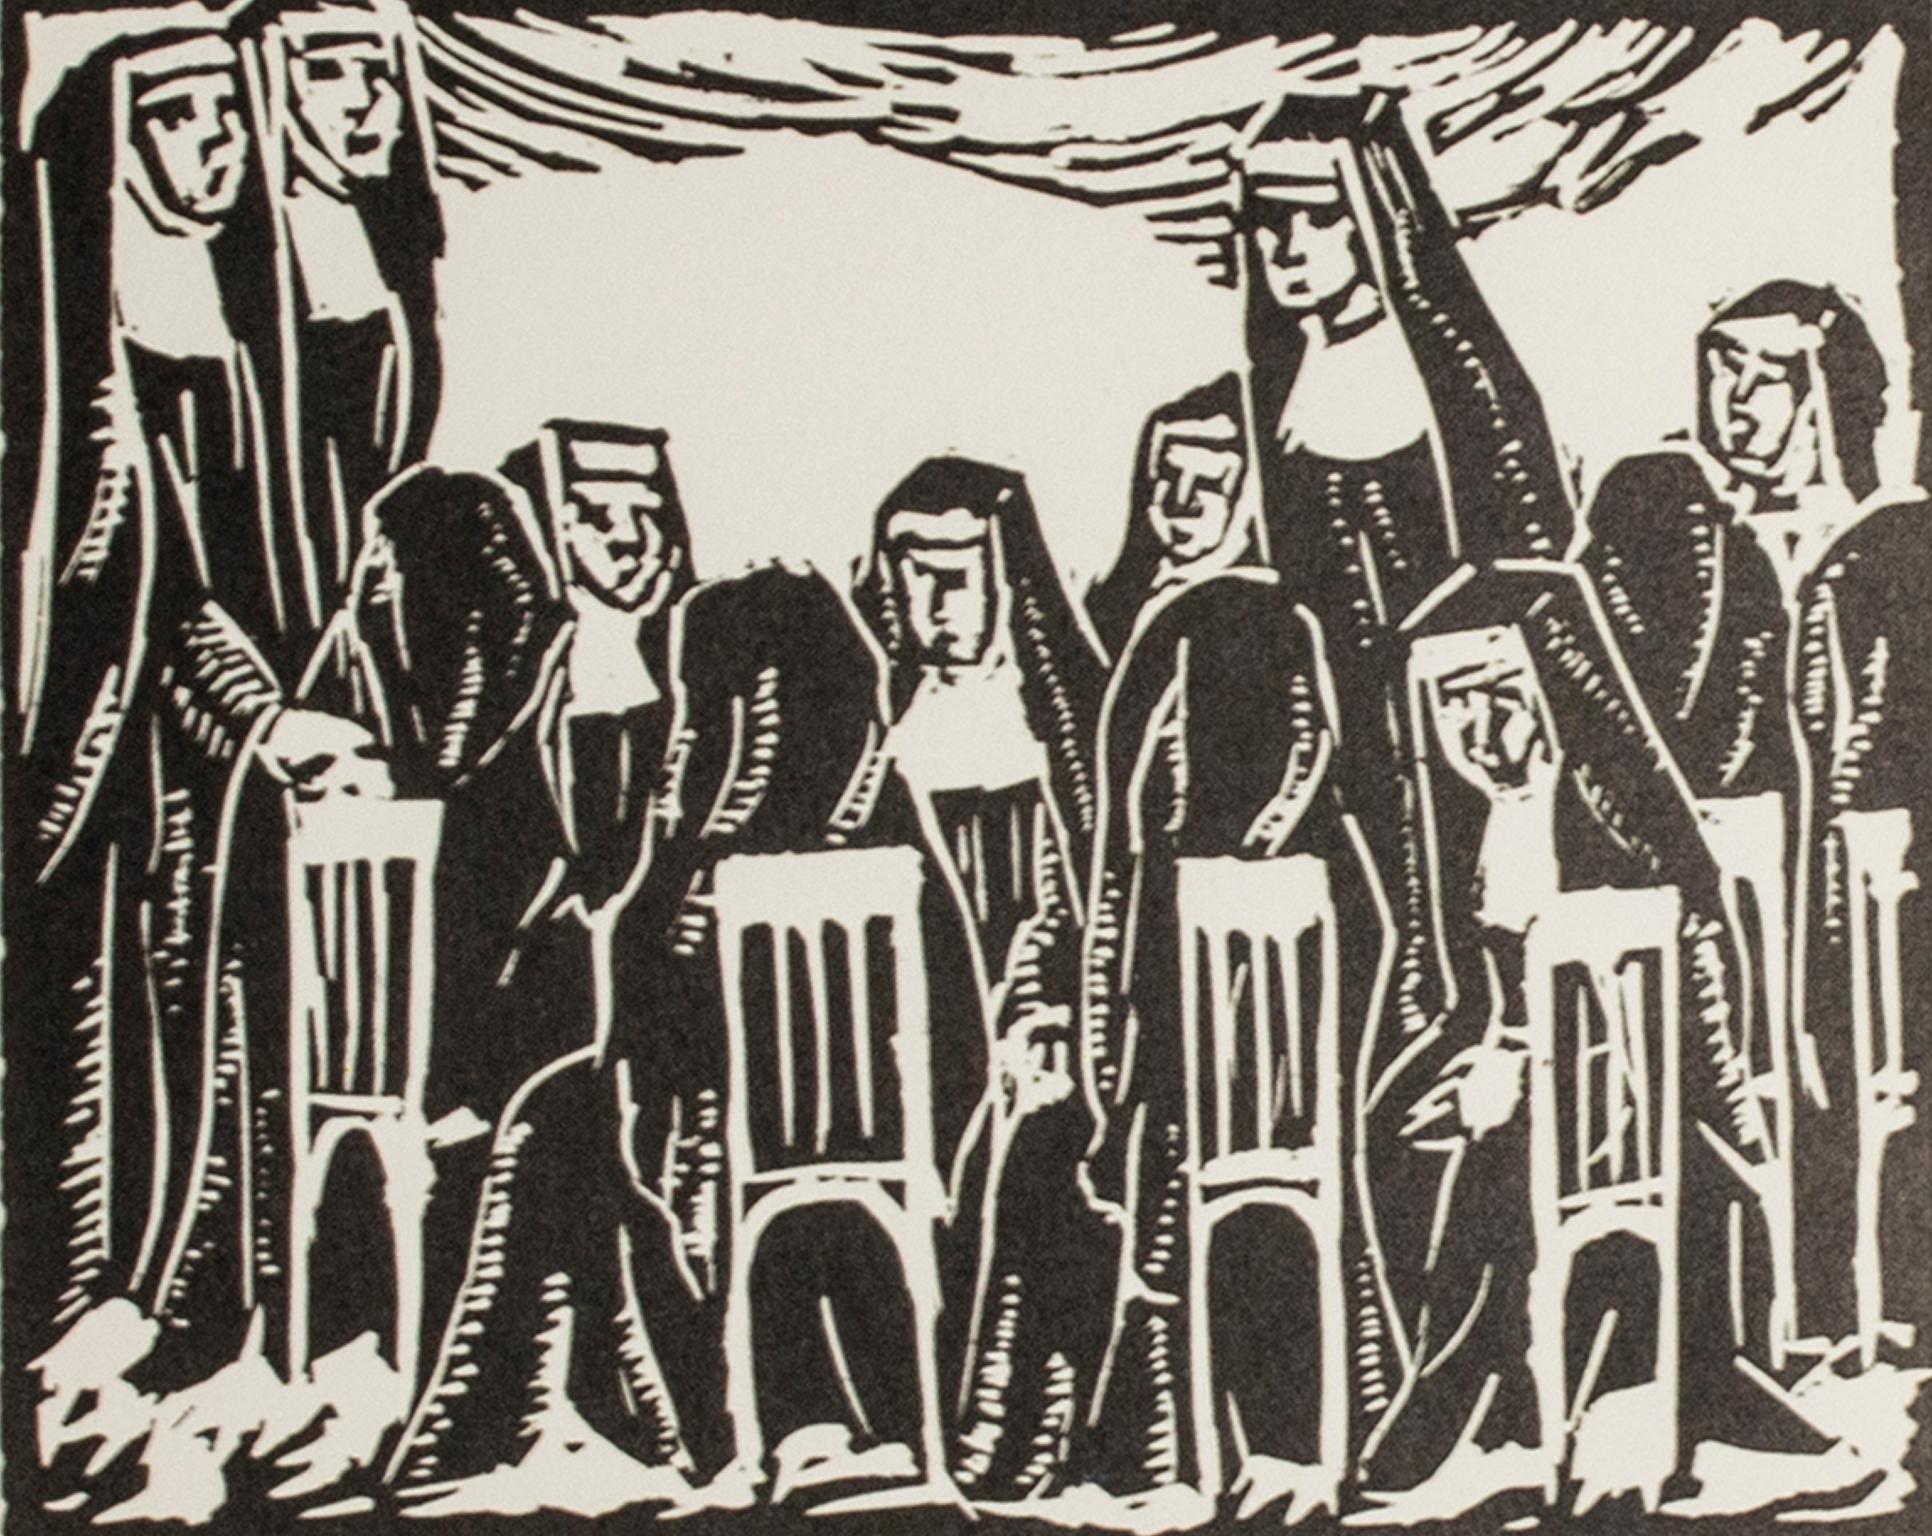 "Sisters" ist ein Original-Linoldruck von Hulda Rotier Fisher. Es zeigt eine Versammlung von Nonnen. 

Bild: 4" x 5"
Gerahmt: 12.12" x 13.12"

Hulda Rotier Fischer war eine bekannte Künstlerin und Lehrerin aus Milwaukee, Wisconsin, die seit den